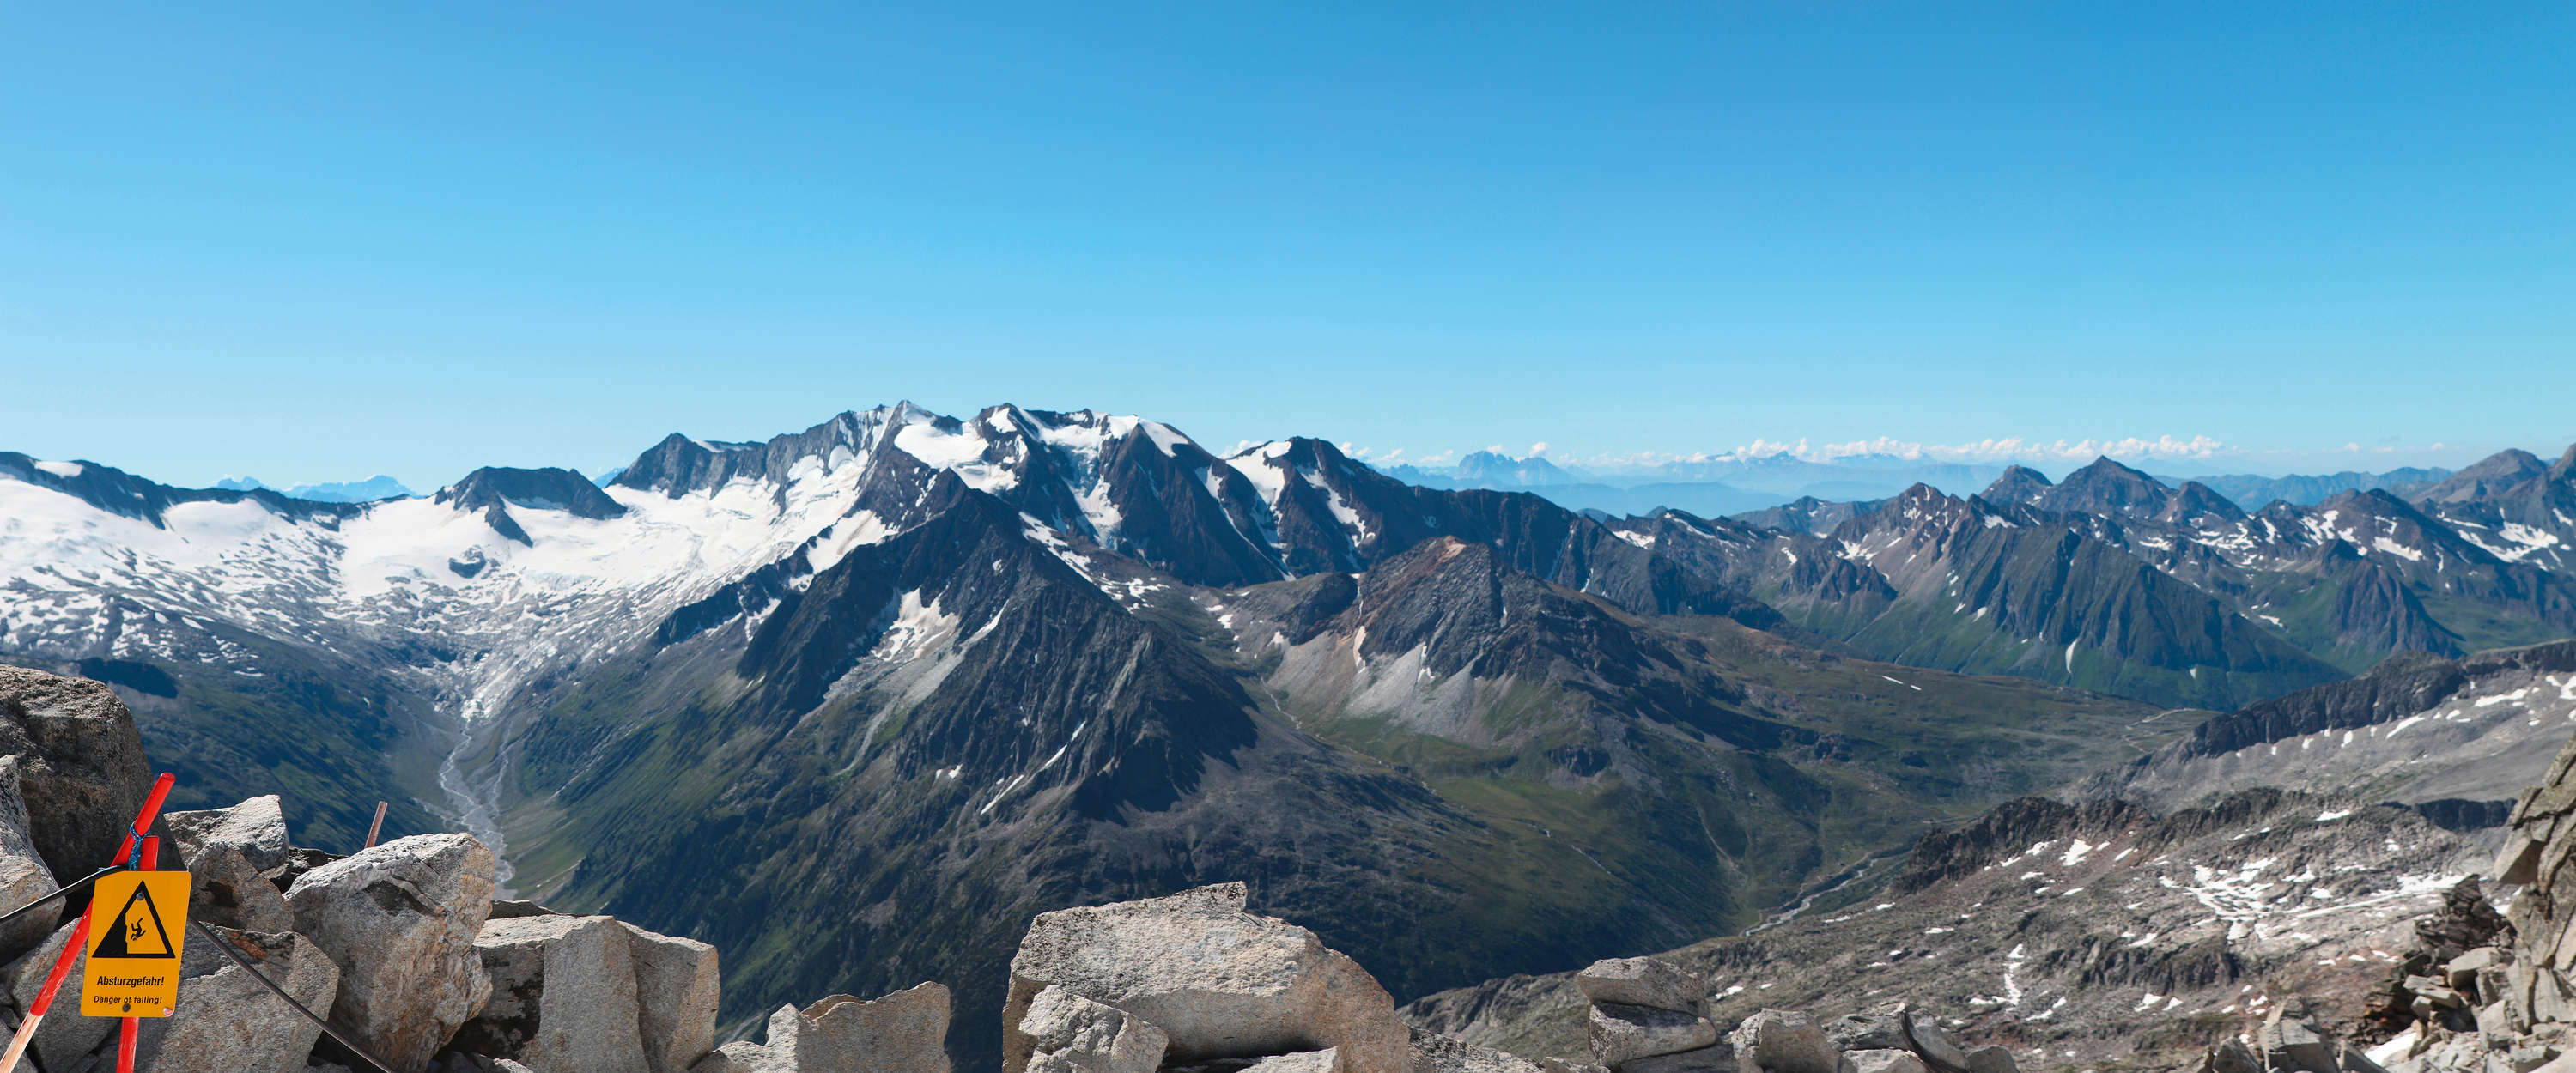             Fototapete mit Weitsicht auf das Alpenpanorama
        